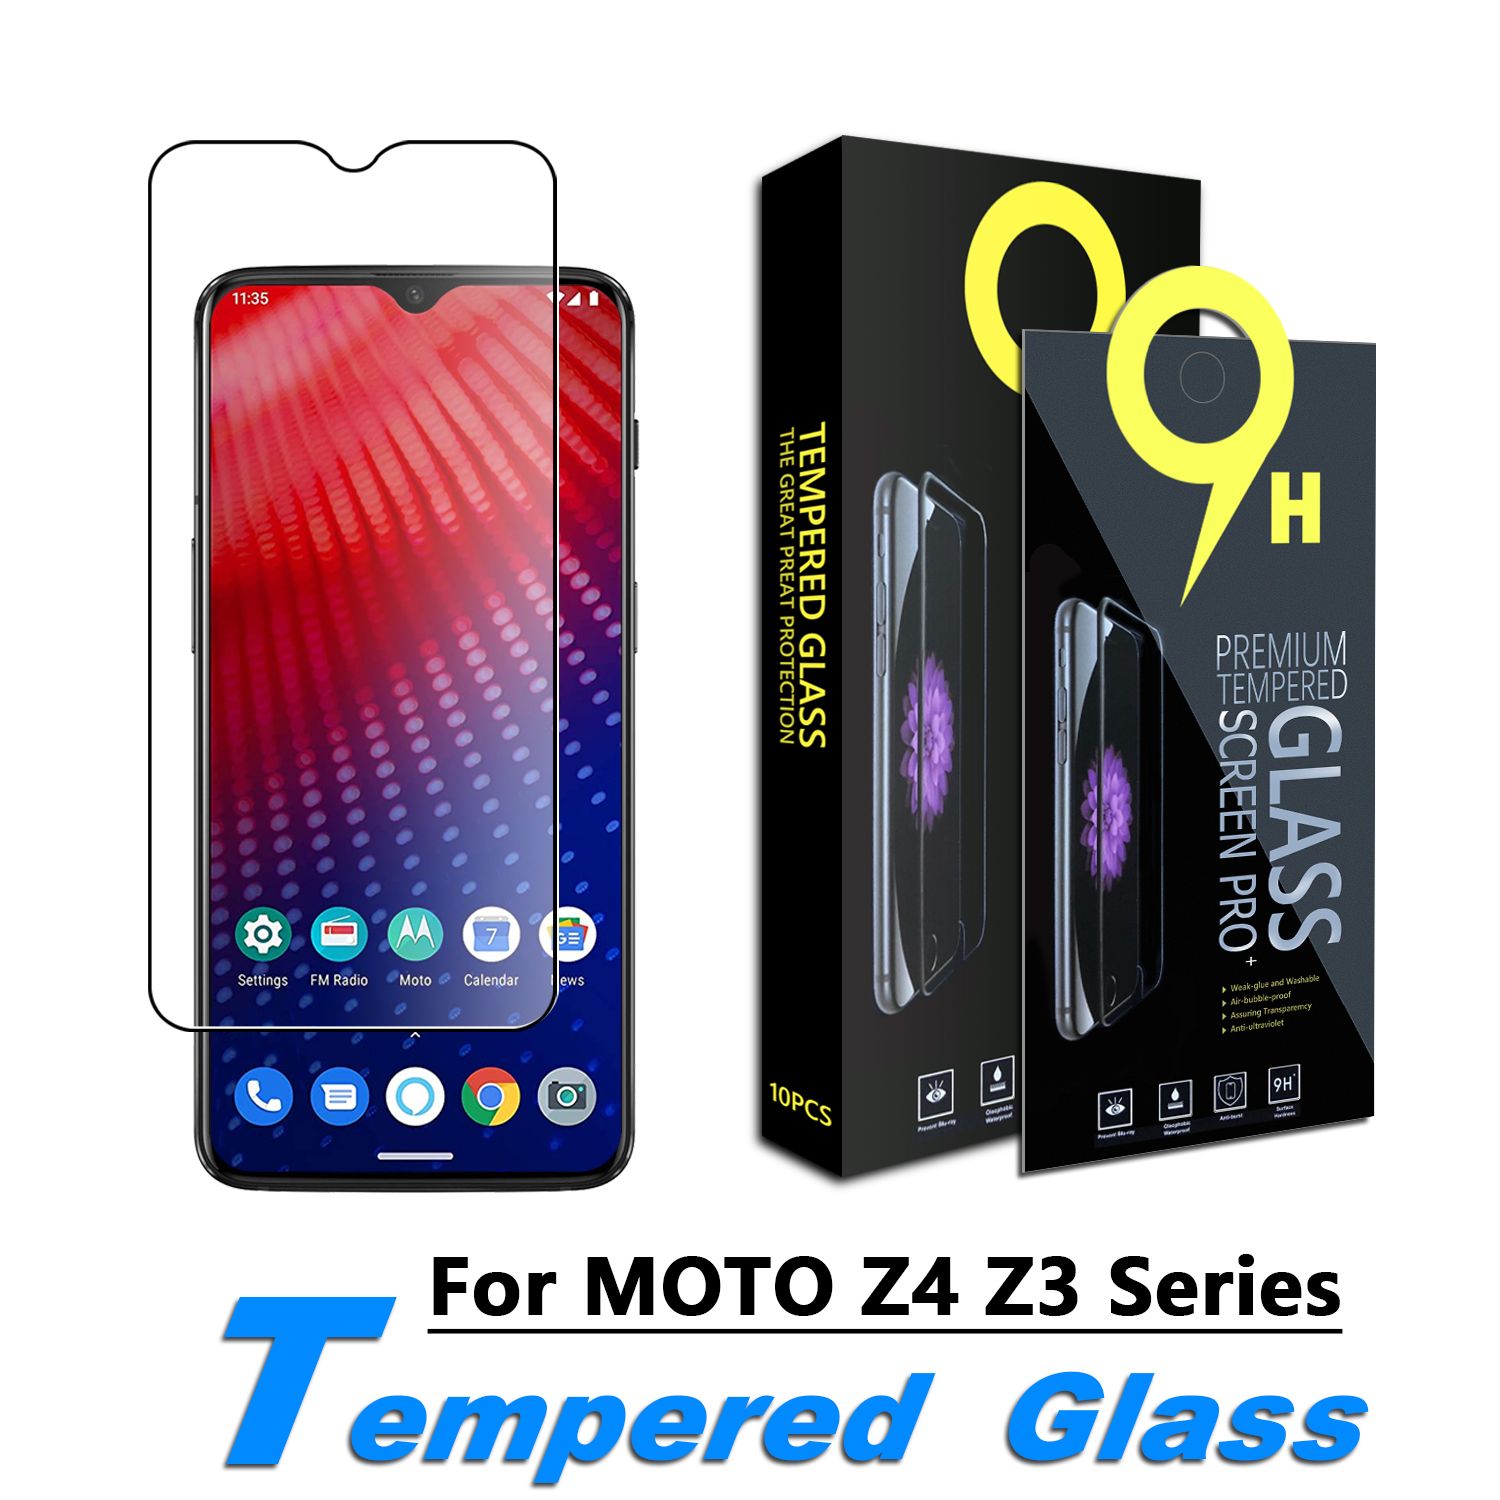 2 X Lenovo Moto E4 Plus versión de la UE de protección de cristal templado transparente